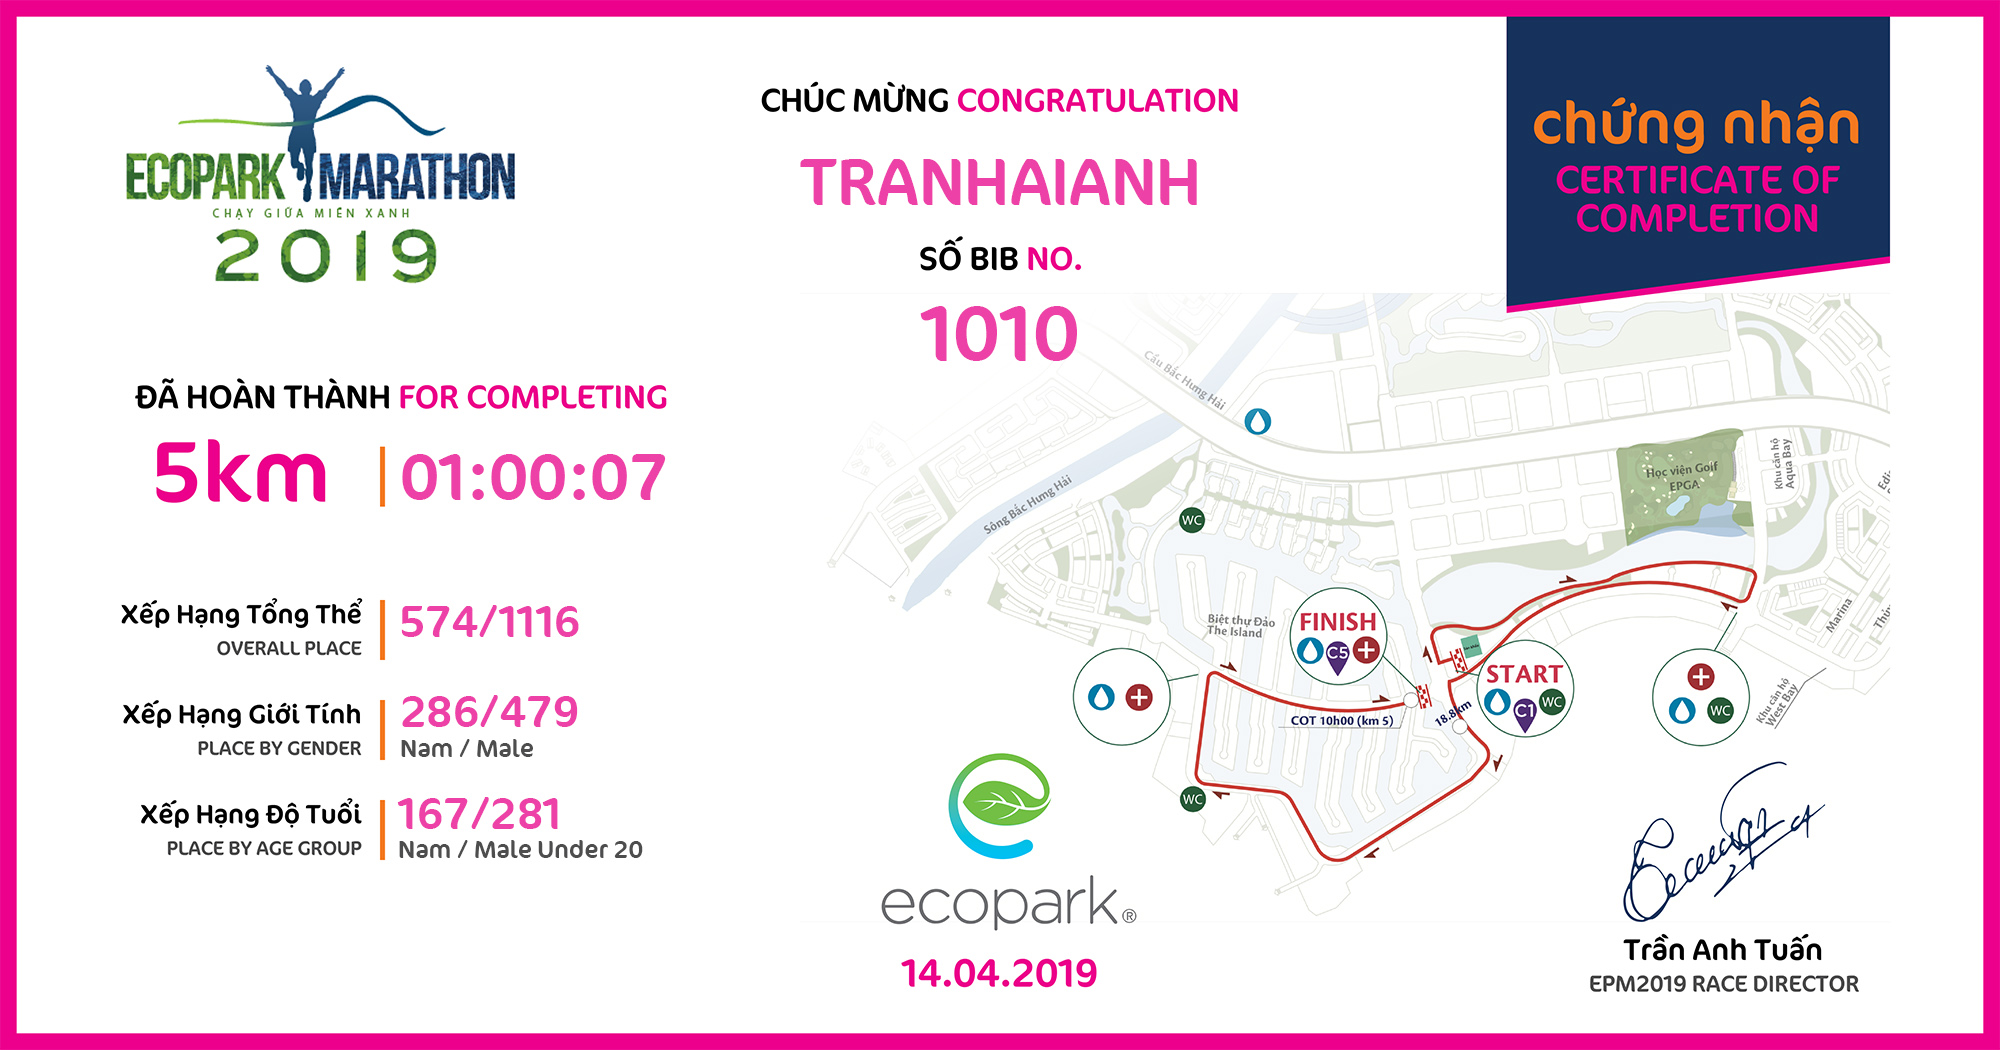 1010 - Tranhaianh